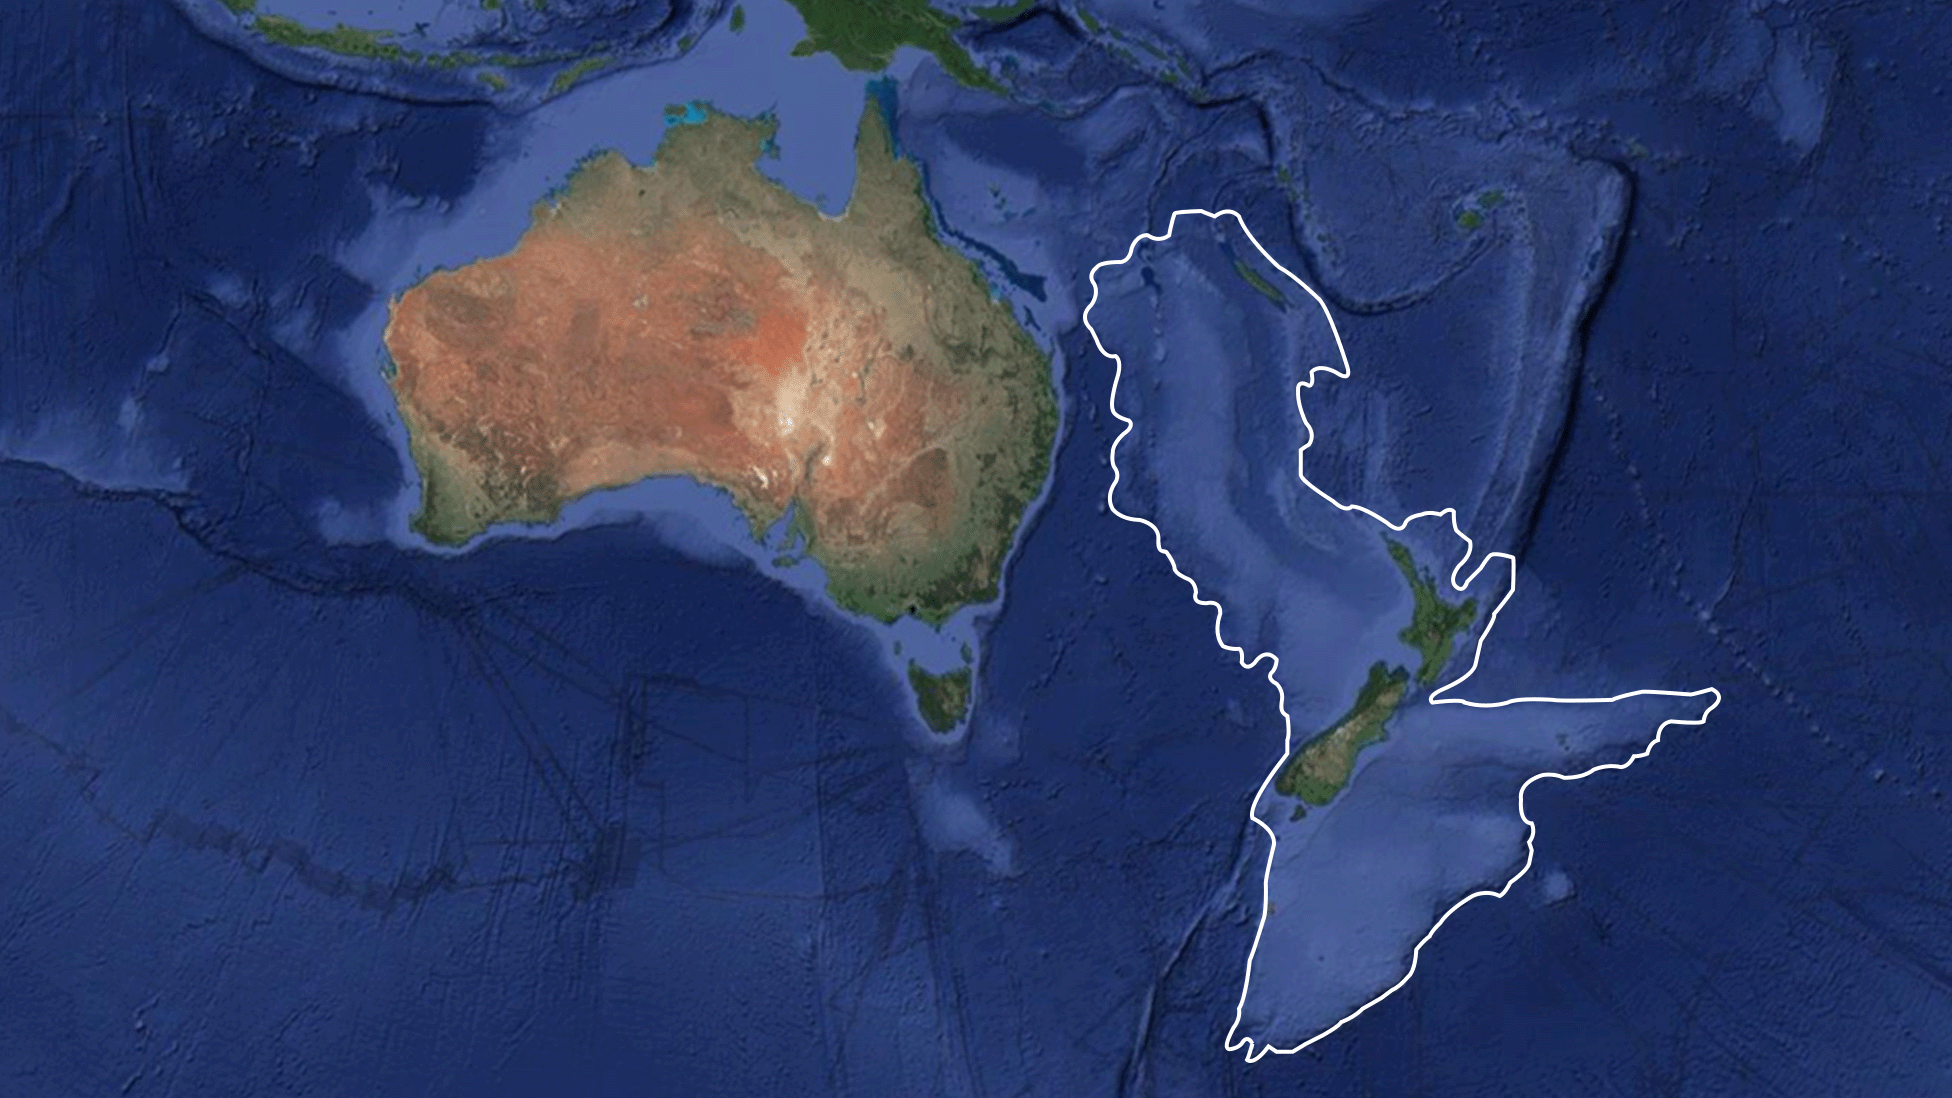 Zelandia tiene una superficie de unos 5 millones de km2.